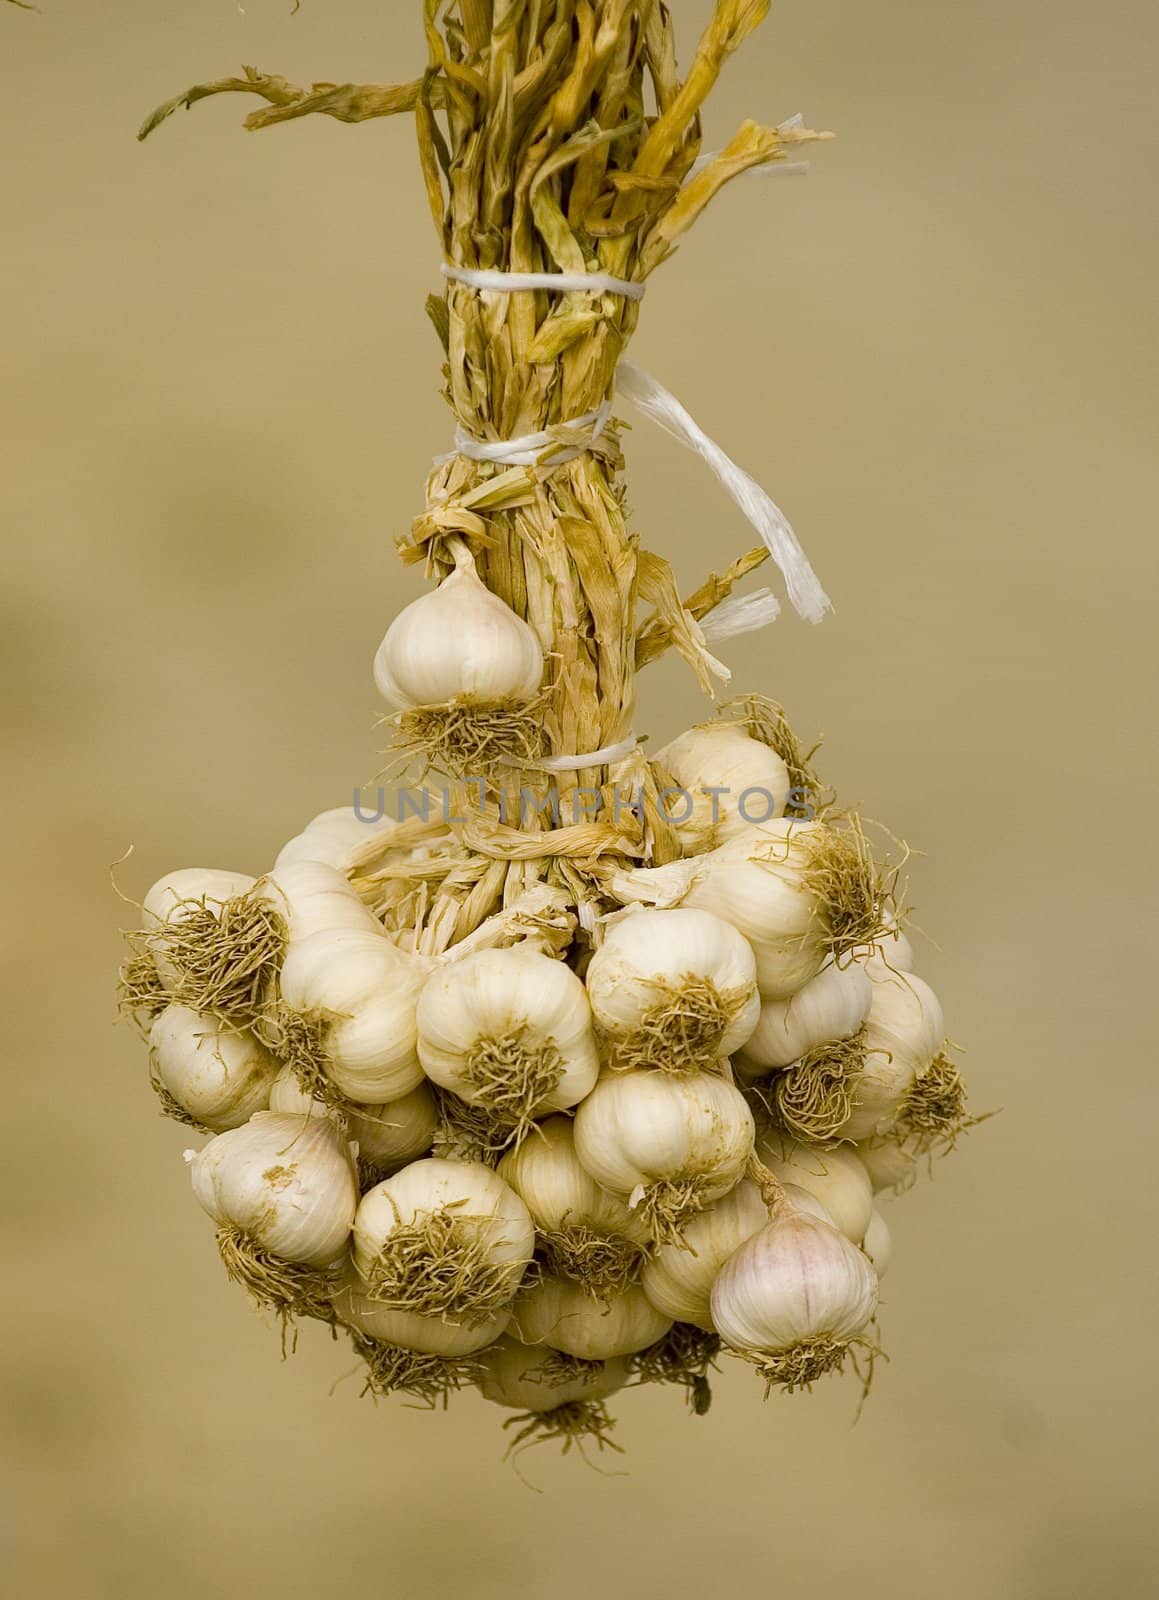 Close up on garlic in turkish market